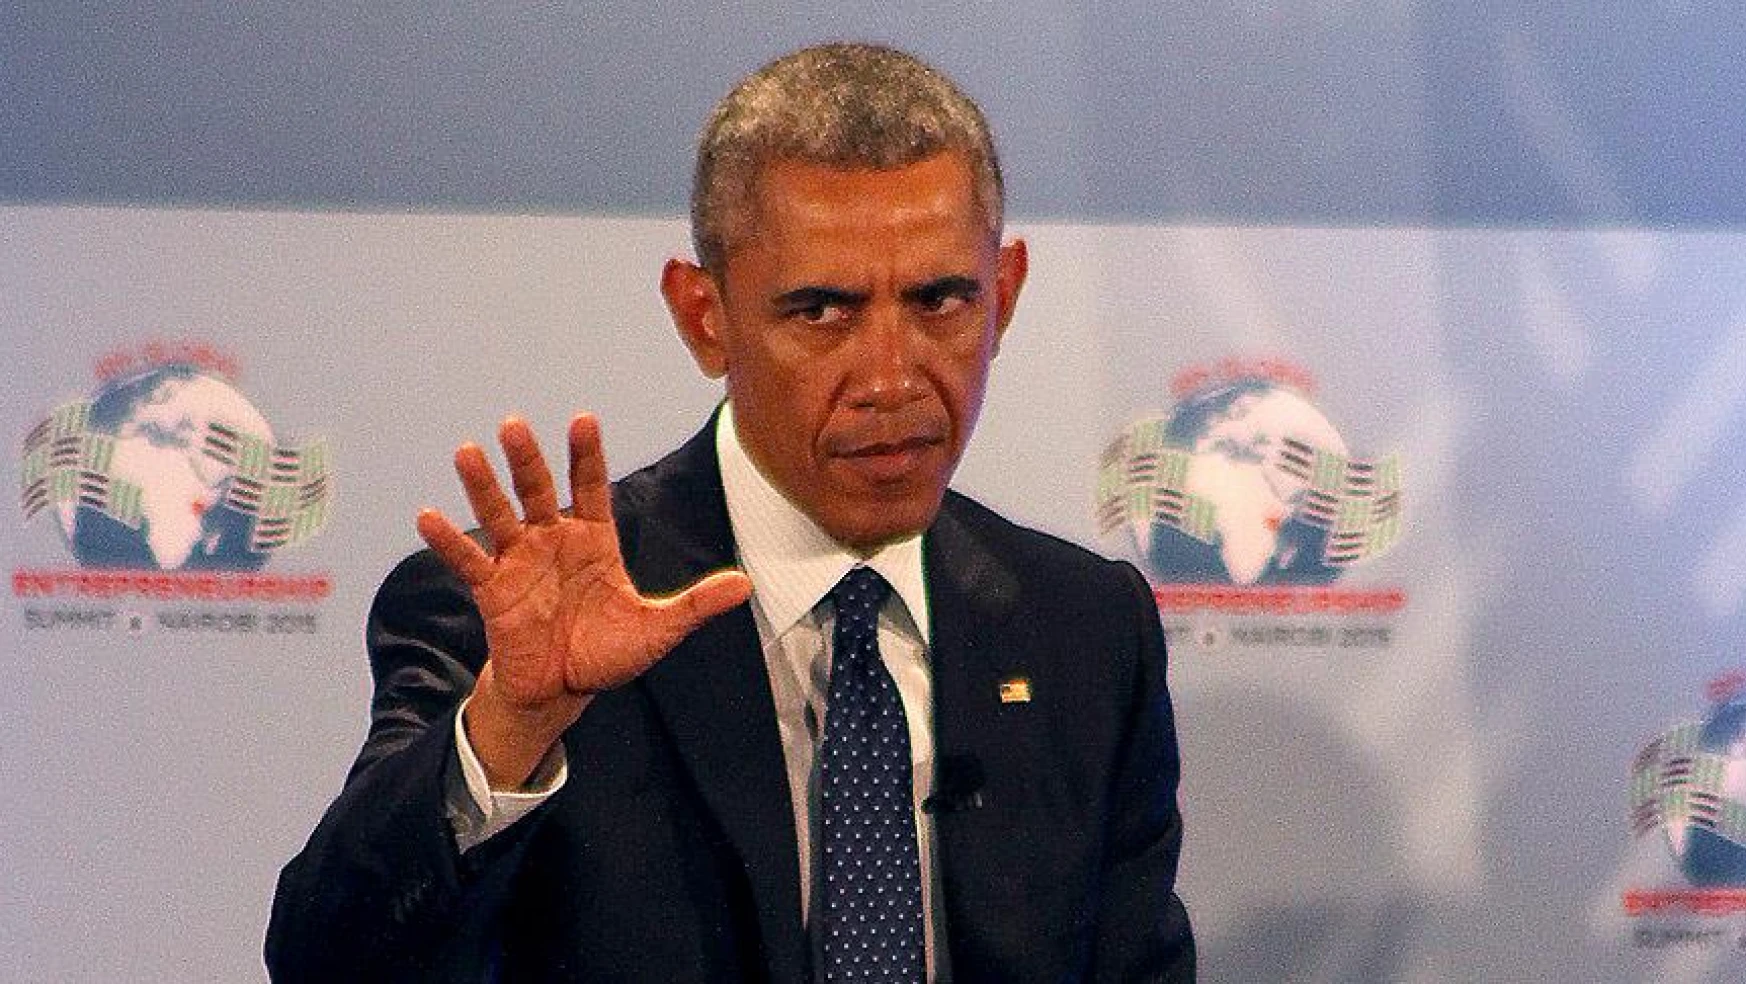 Obama Ulusal Güvenlik Konseyi ile DAEŞ'e karşı mücadeleyi konuştu